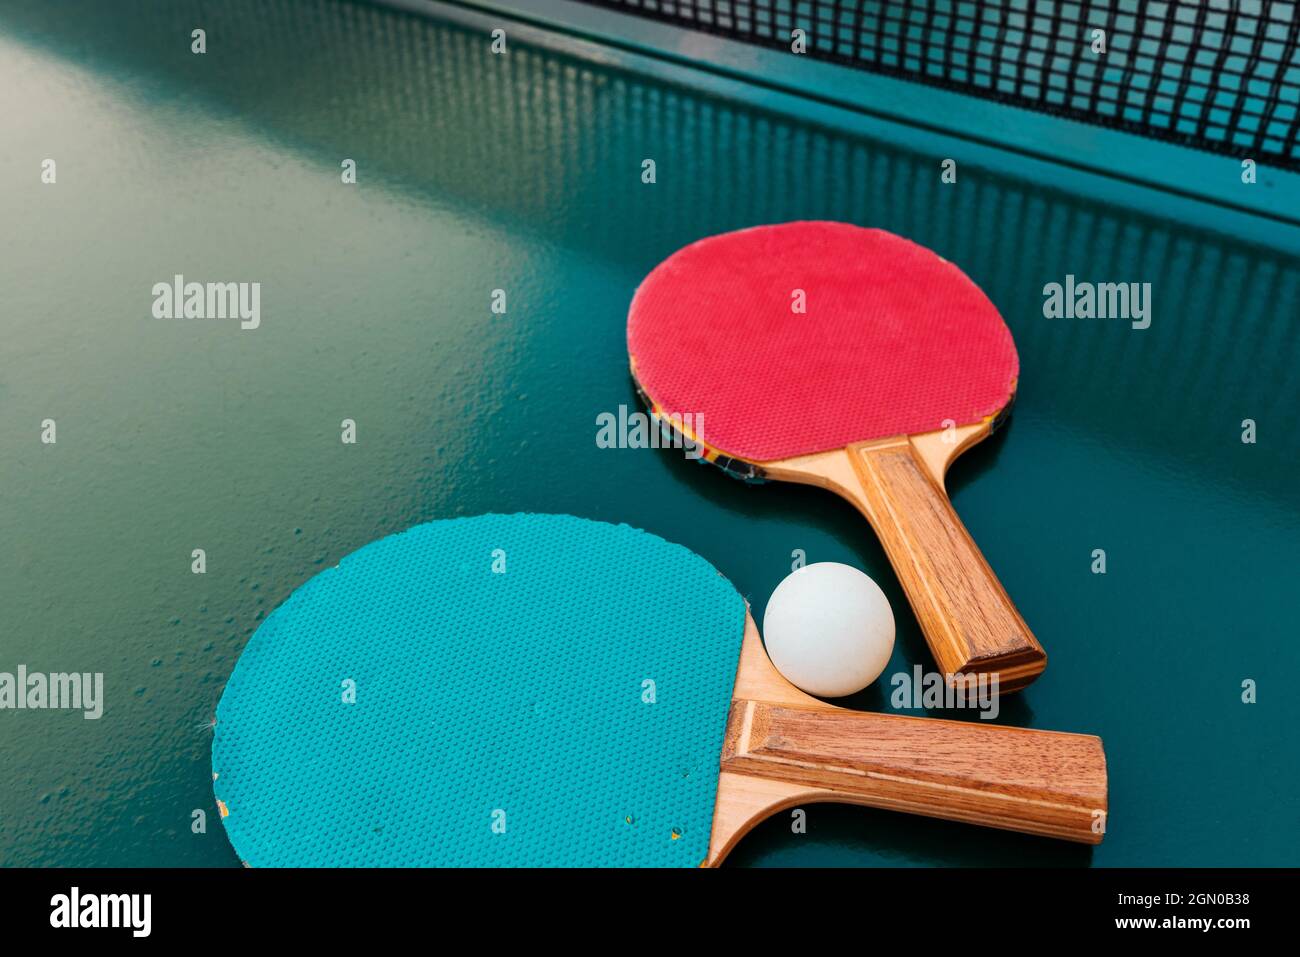 Raquettes de tennis de table et balles de ping-pong sur une surface de table verte avec filet, mise au point sélective Banque D'Images